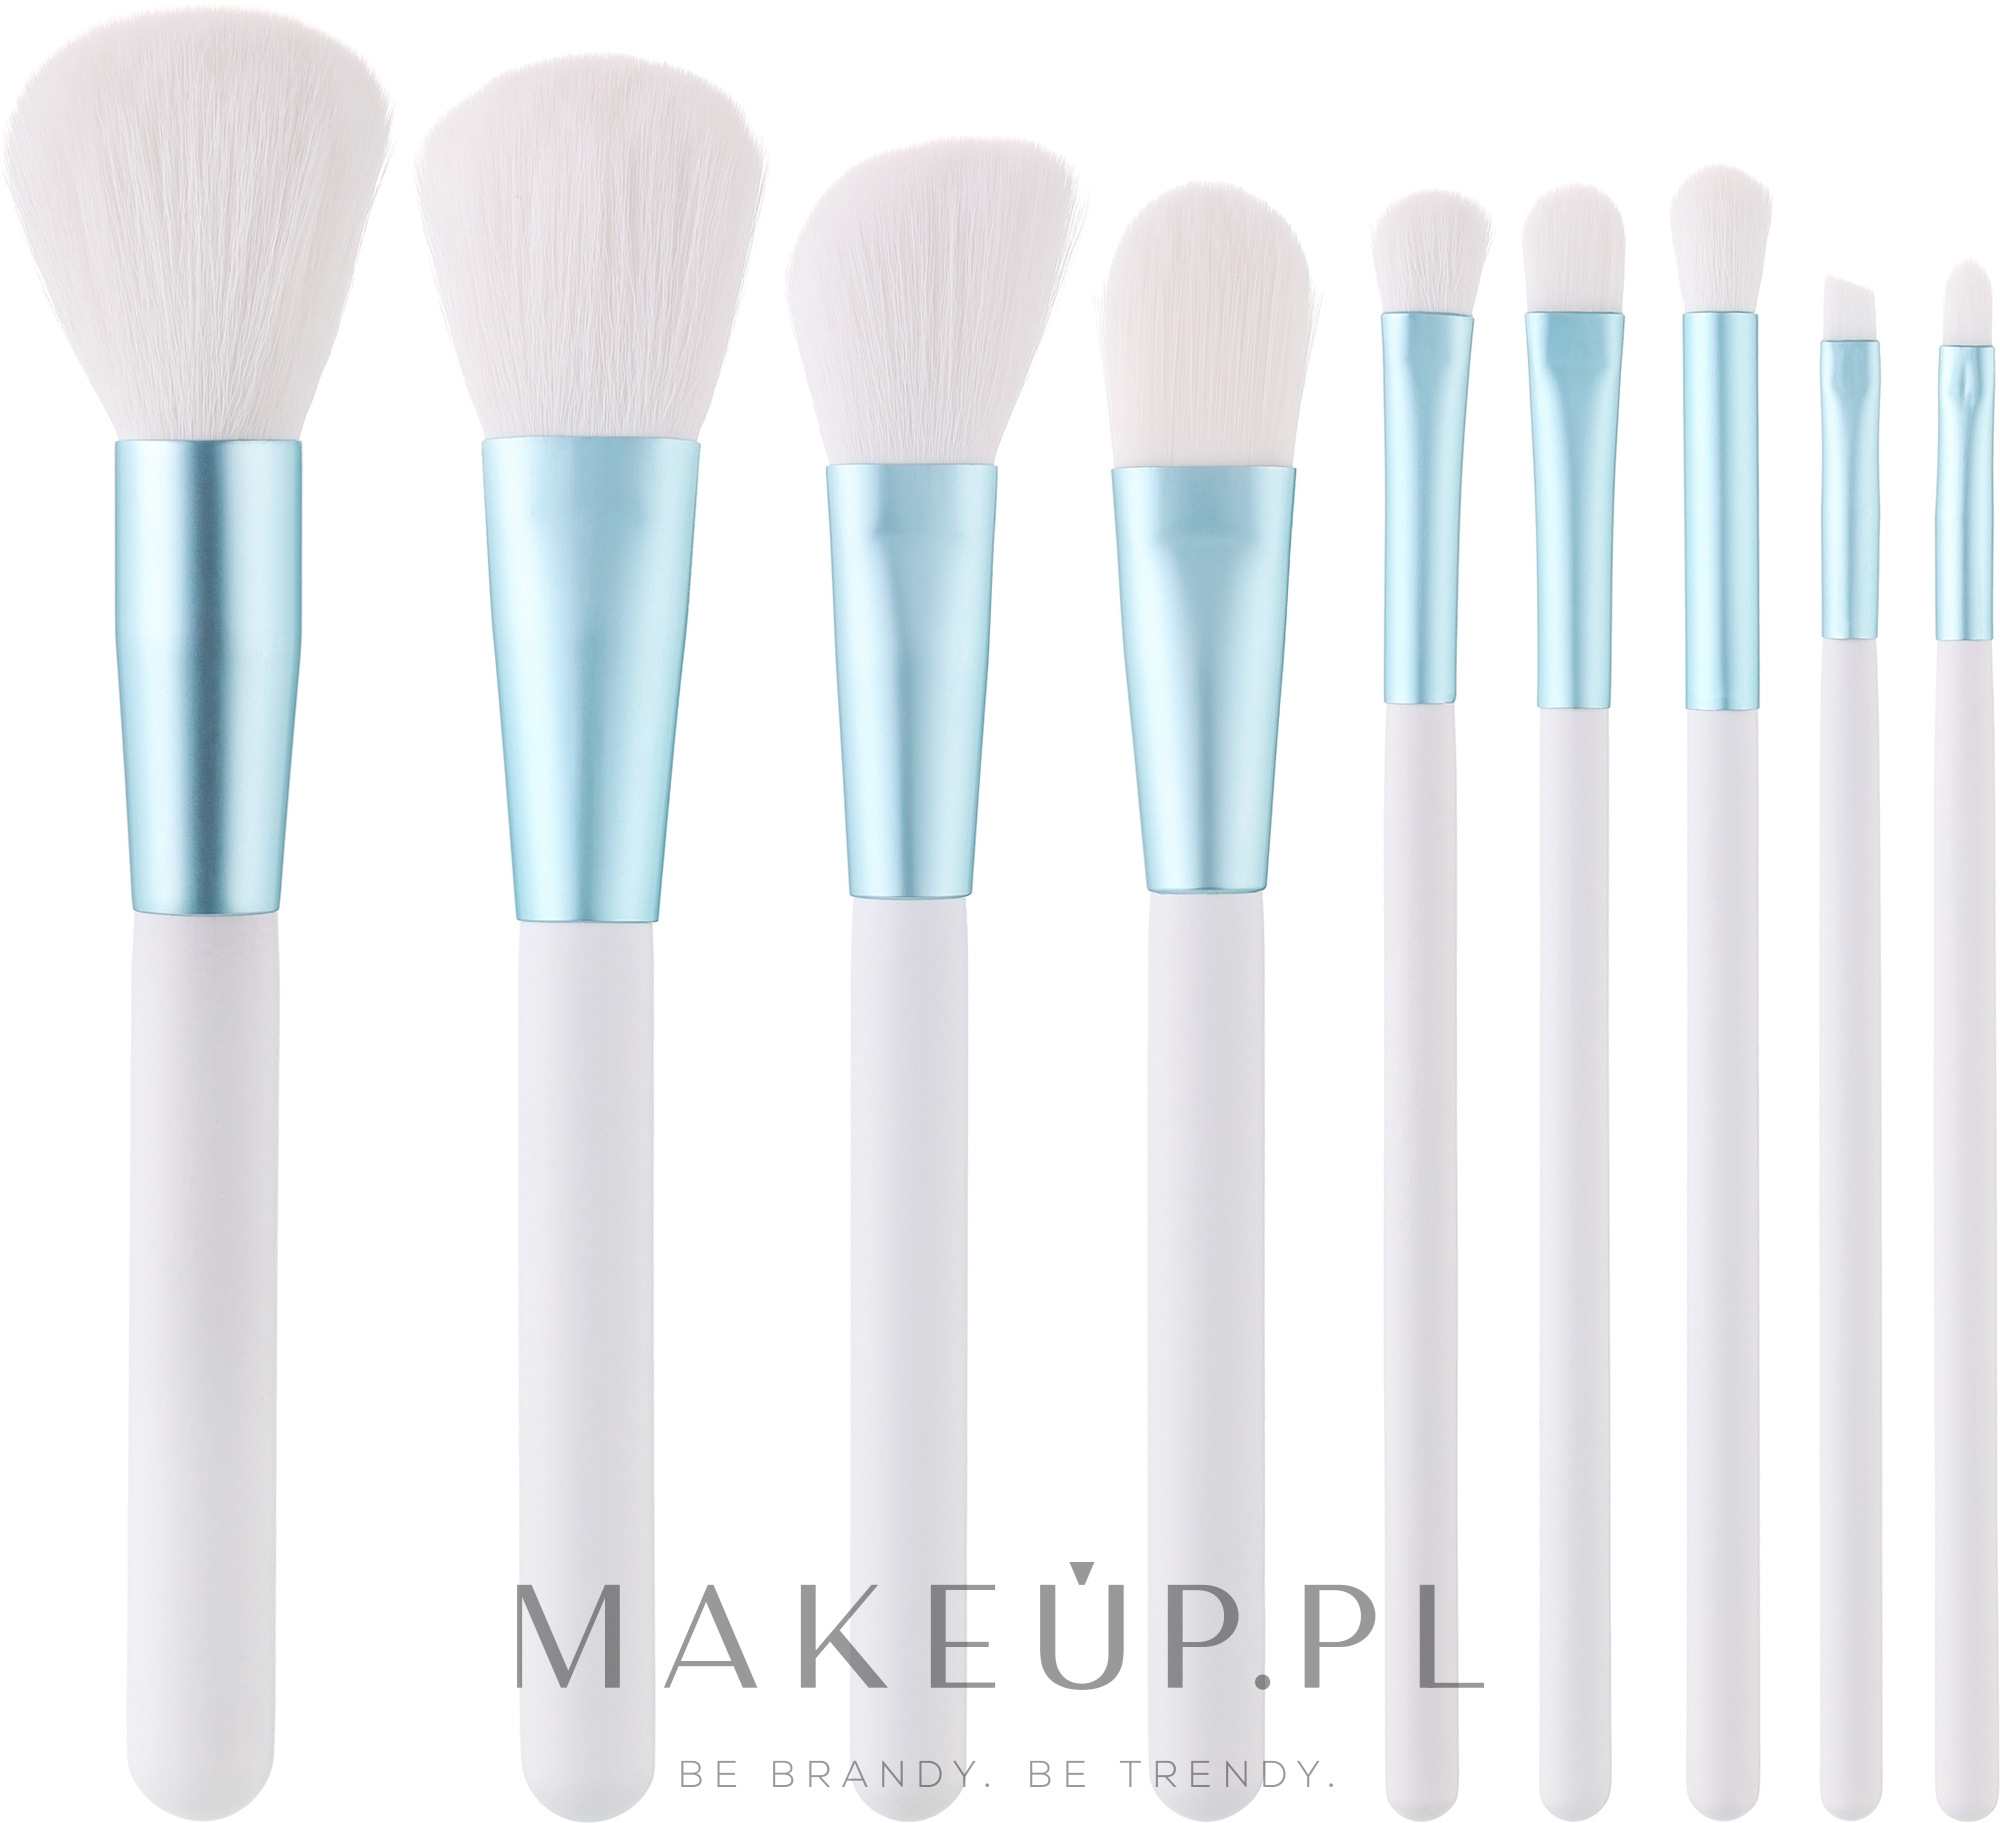 Zestaw pędzli do makijażu, 9 szt., Biało-niebieskie - Tools For Beauty MiMo White Set — Zdjęcie 9 szt.